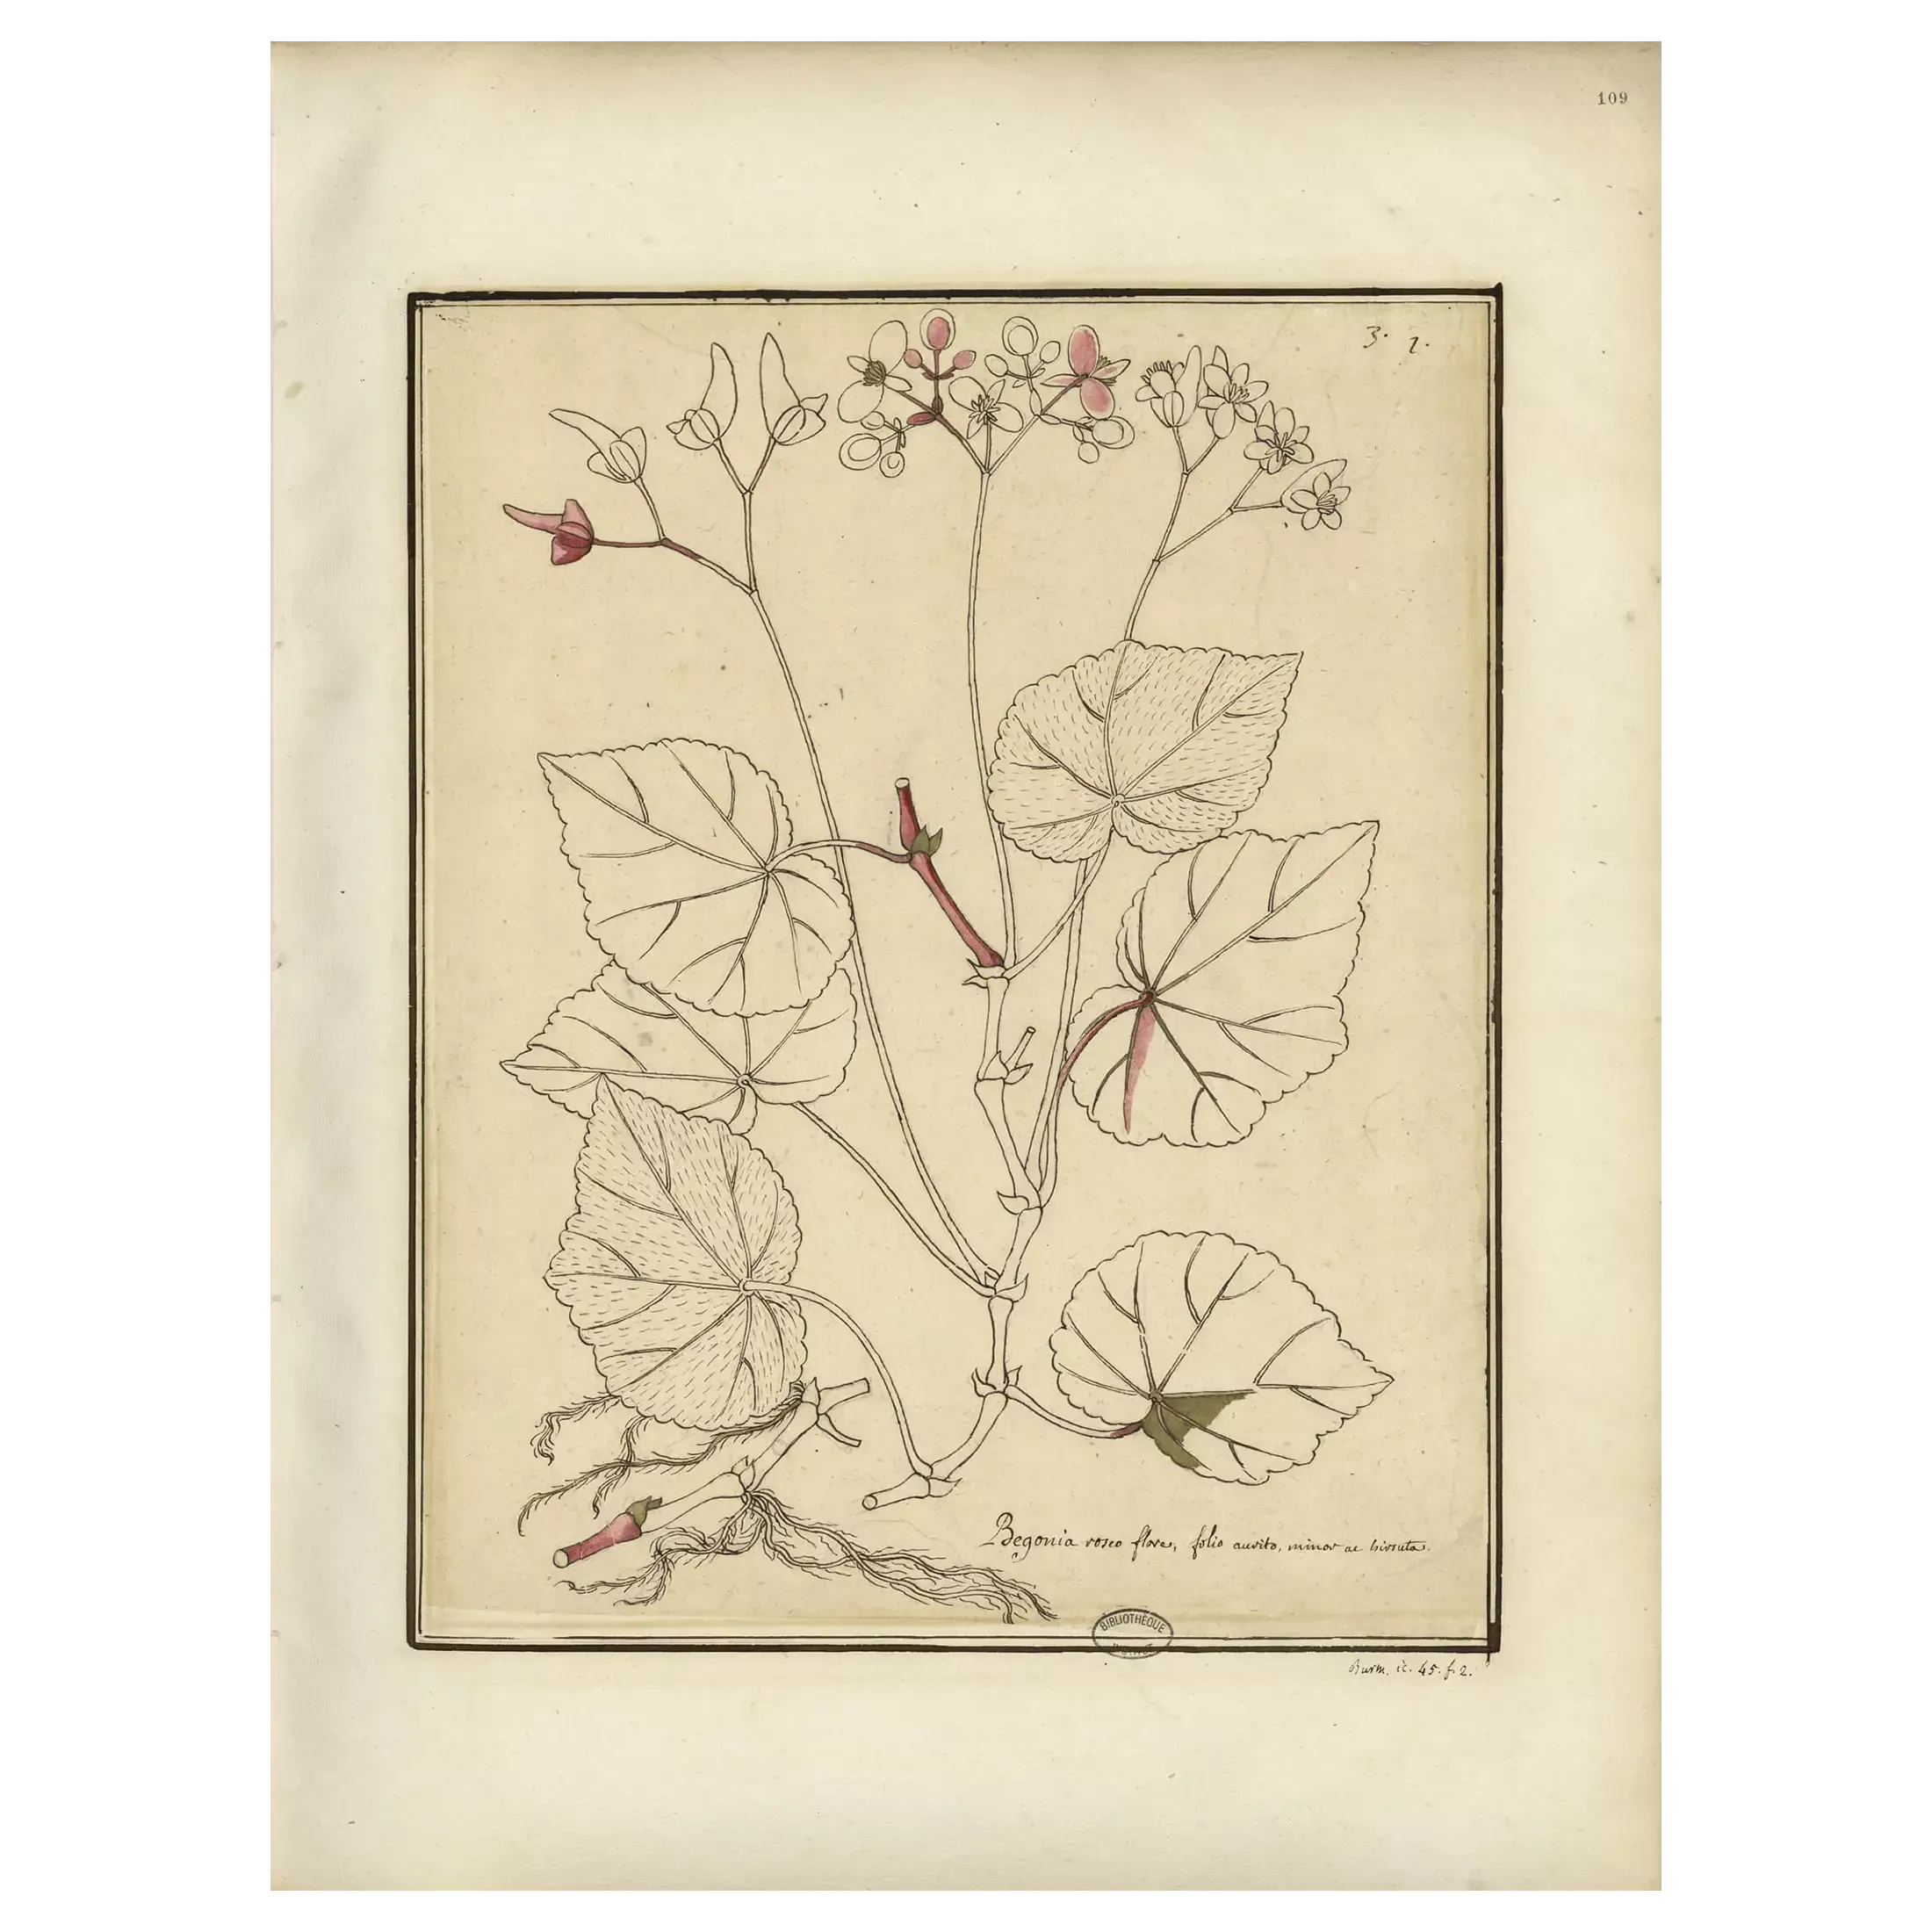 Dessin sur papier, rehauts à la plume et à l’aquarelle, entre 1687 et 1704, <em>Americanarum plantarum icones</em>, tome 1, f° 109.